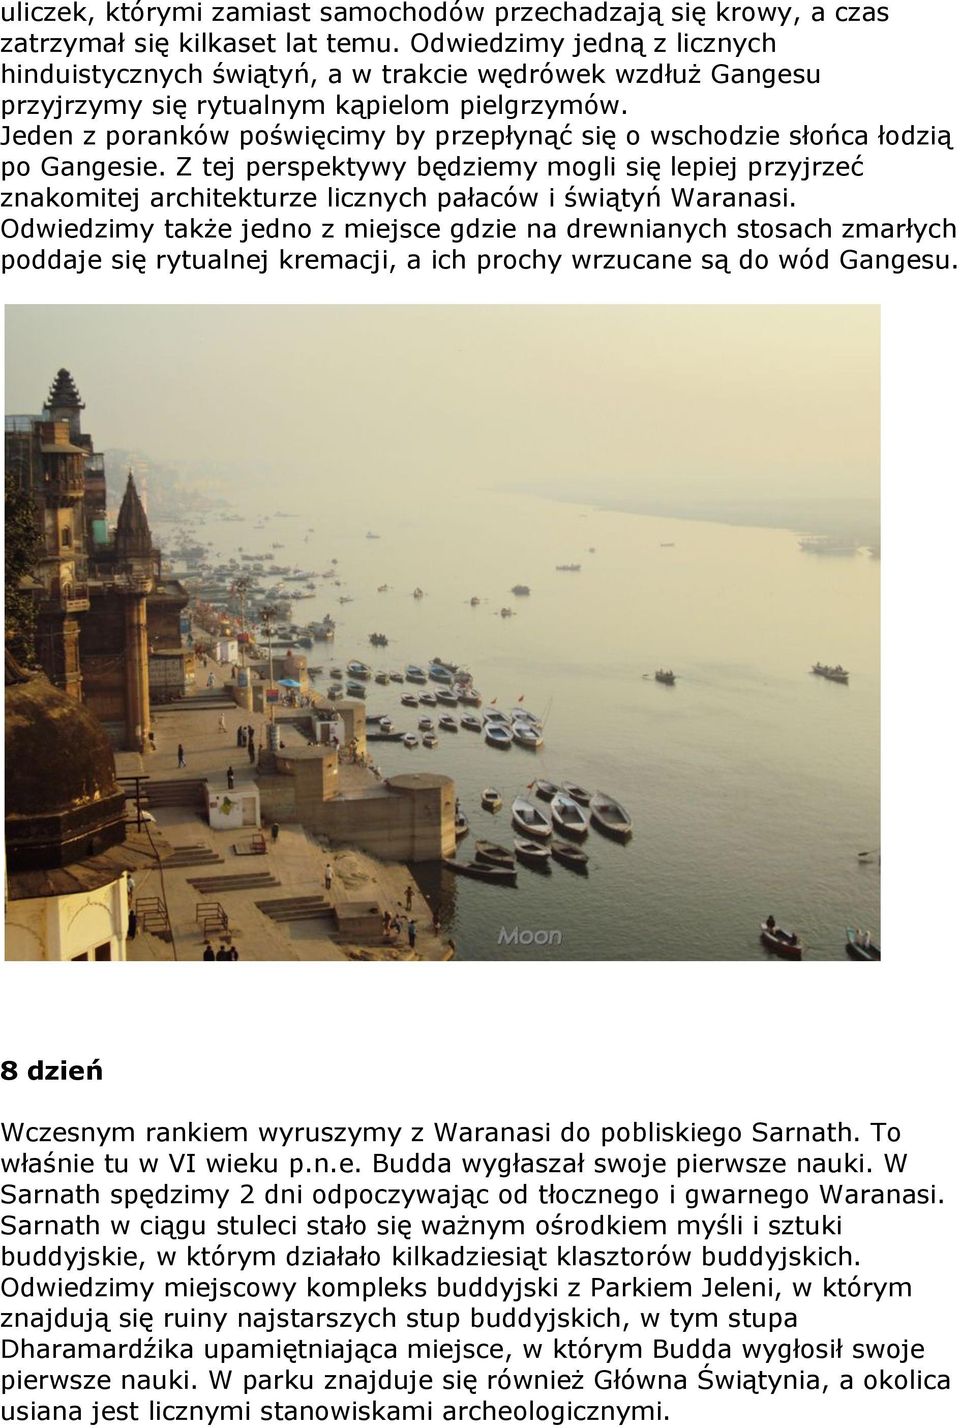 Jeden z poranków poświęcimy by przepłynąć się o wschodzie słońca łodzią po Gangesie. Z tej perspektywy będziemy mogli się lepiej przyjrzeć znakomitej architekturze licznych pałaców i świątyń Waranasi.